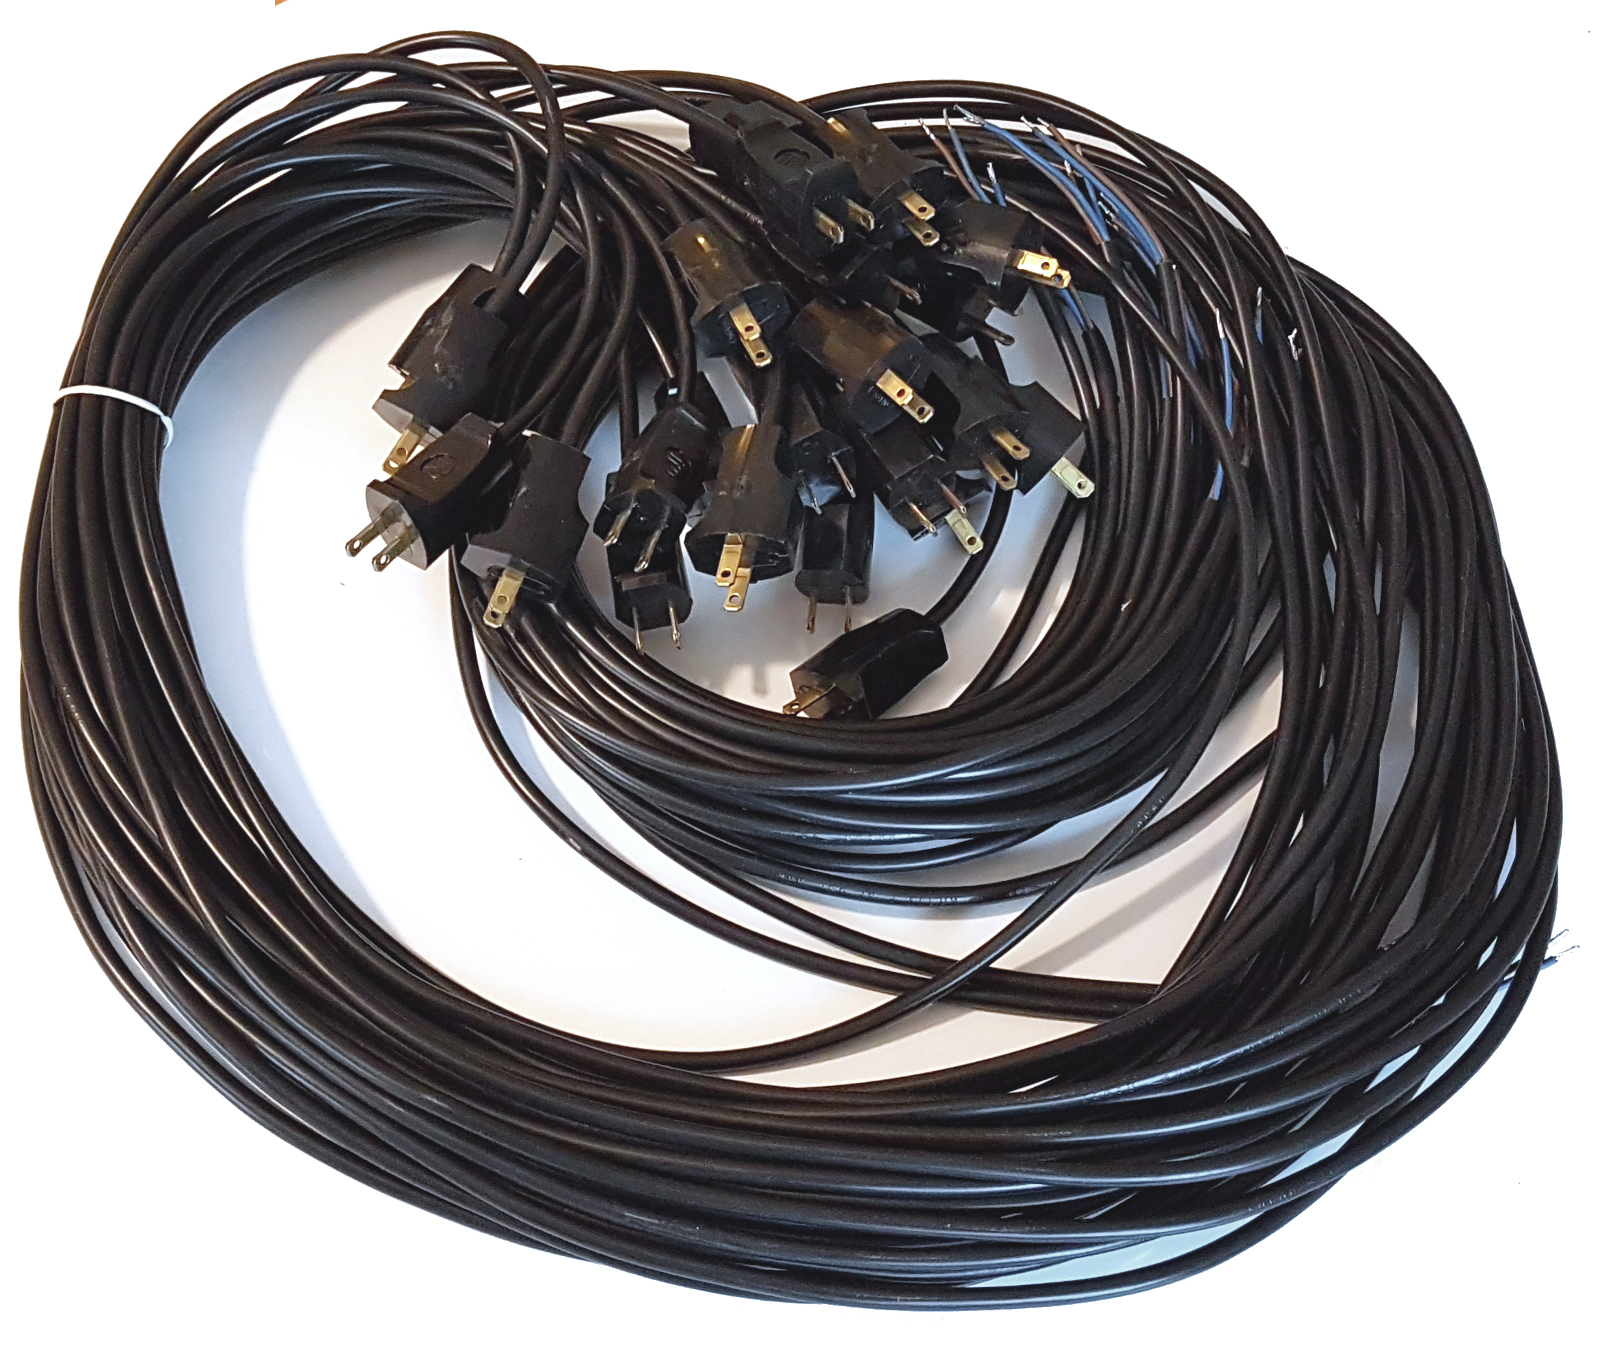 2-жильний кабель (кабель Cu) довжиною 2 МБ з вилкою США